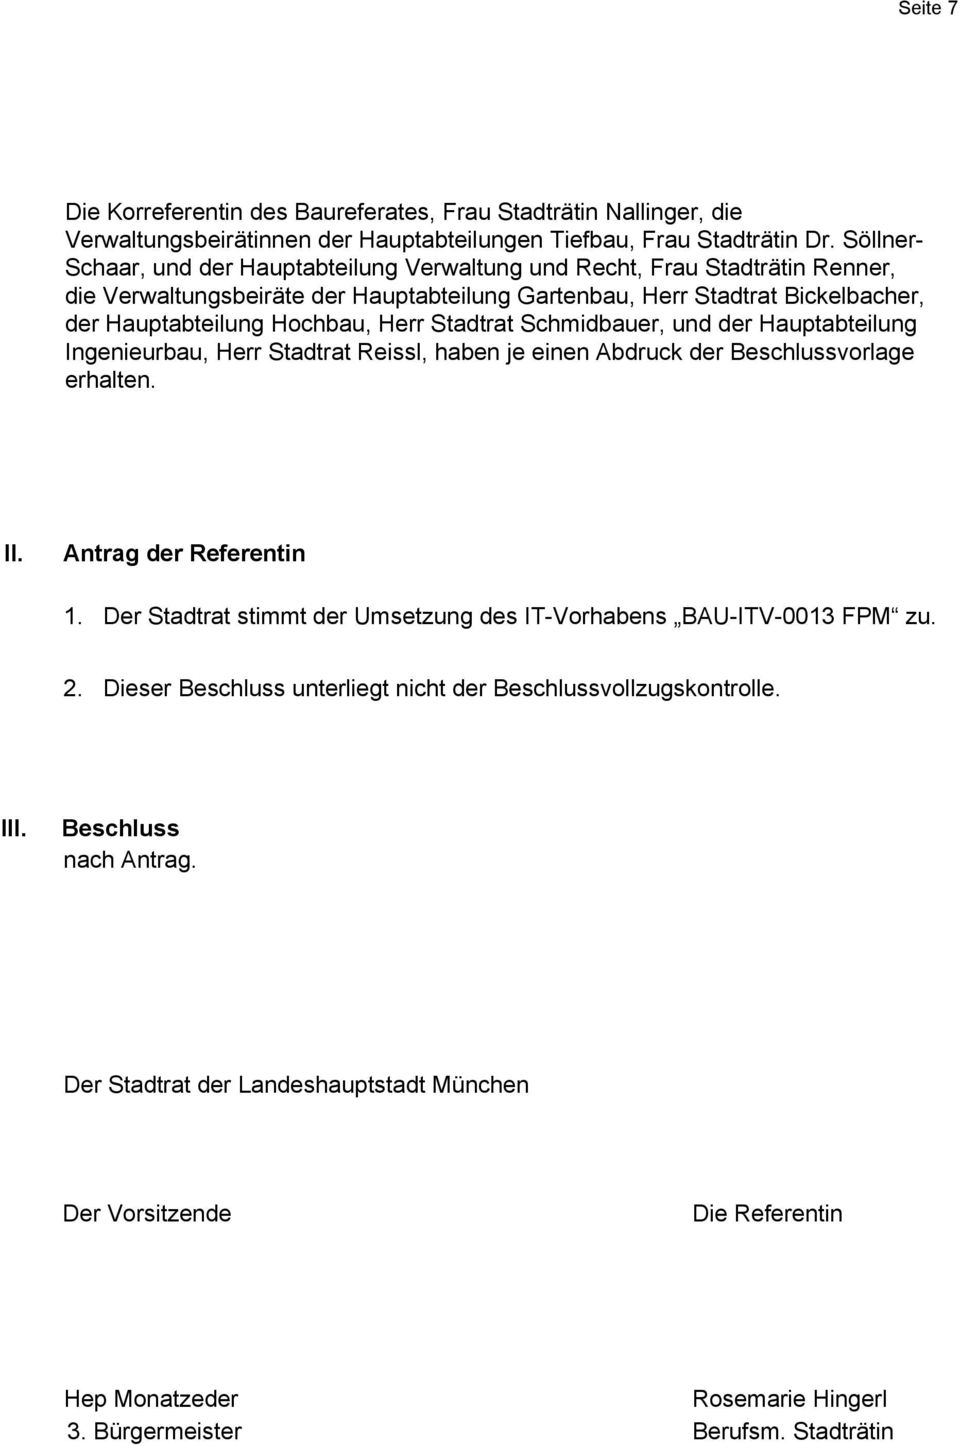 Stadtrat Schmidbauer, und der Hauptabteilung Ingenieurbau, Herr Stadtrat Reissl, haben je einen Abdruck der Beschlussvorlage erhalten. II. Antrag der Referentin 1.